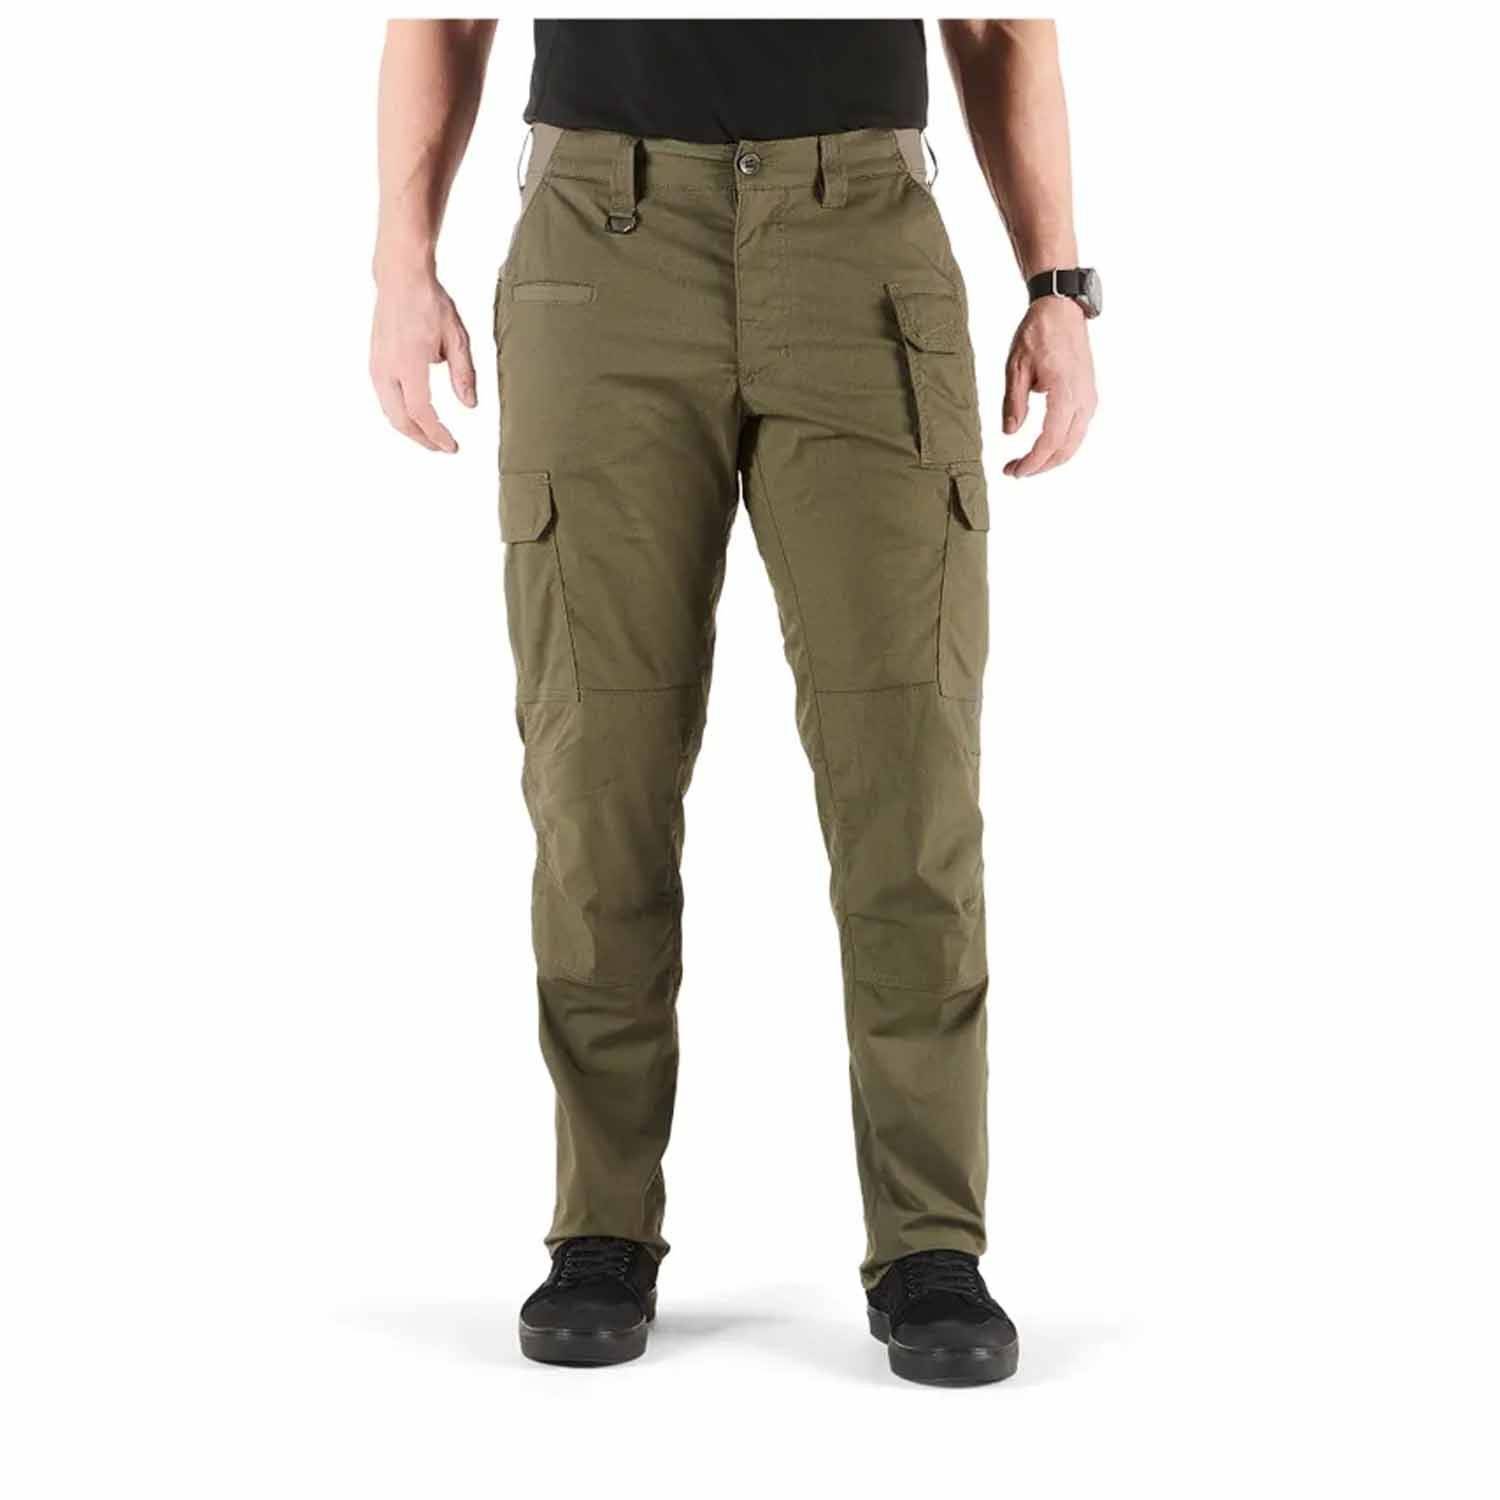 5.11 Tactical ABR Pro Pants